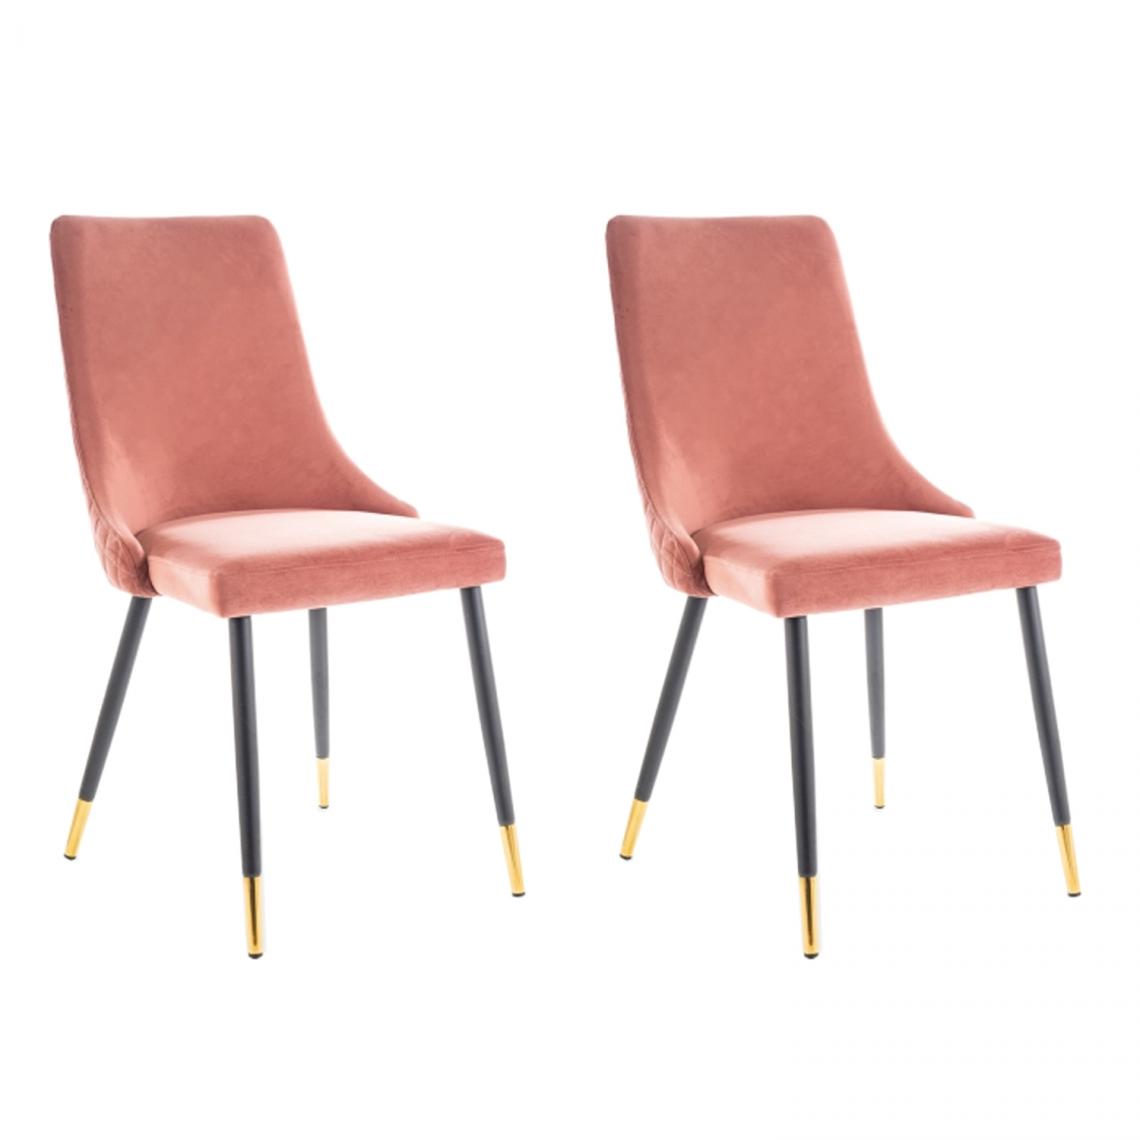 Hucoco - PIANO - Lot de 2 chaises élégantee avec coutures - Style glamour - 92x45x44 cm - Tissu velouté - Rose - Chaises